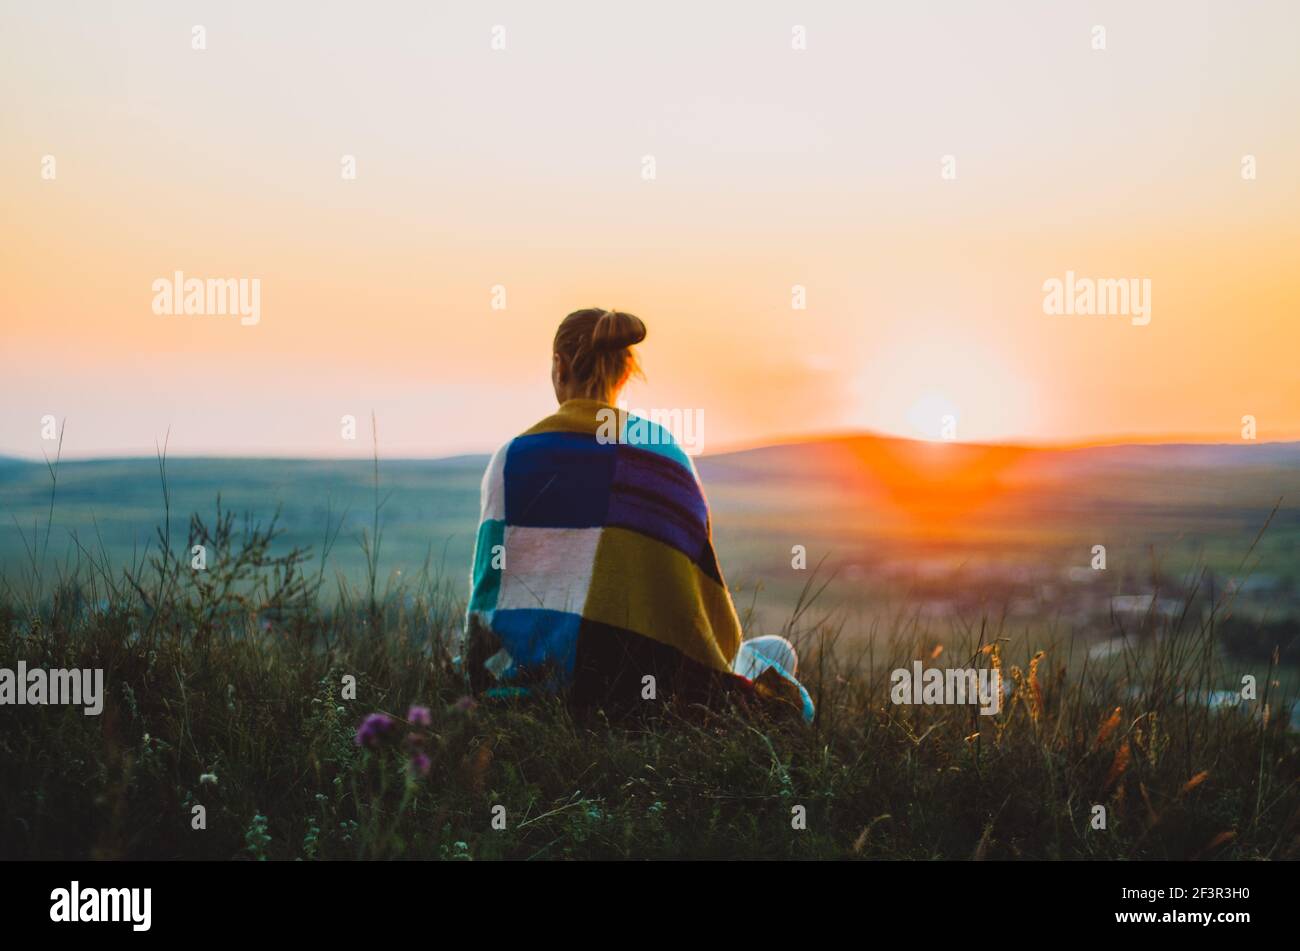 Vue arrière d'une jeune femme enveloppée dans une couverture tricotée colorée assise sur une colline au coucher du soleil, méditant, contemplant Banque D'Images